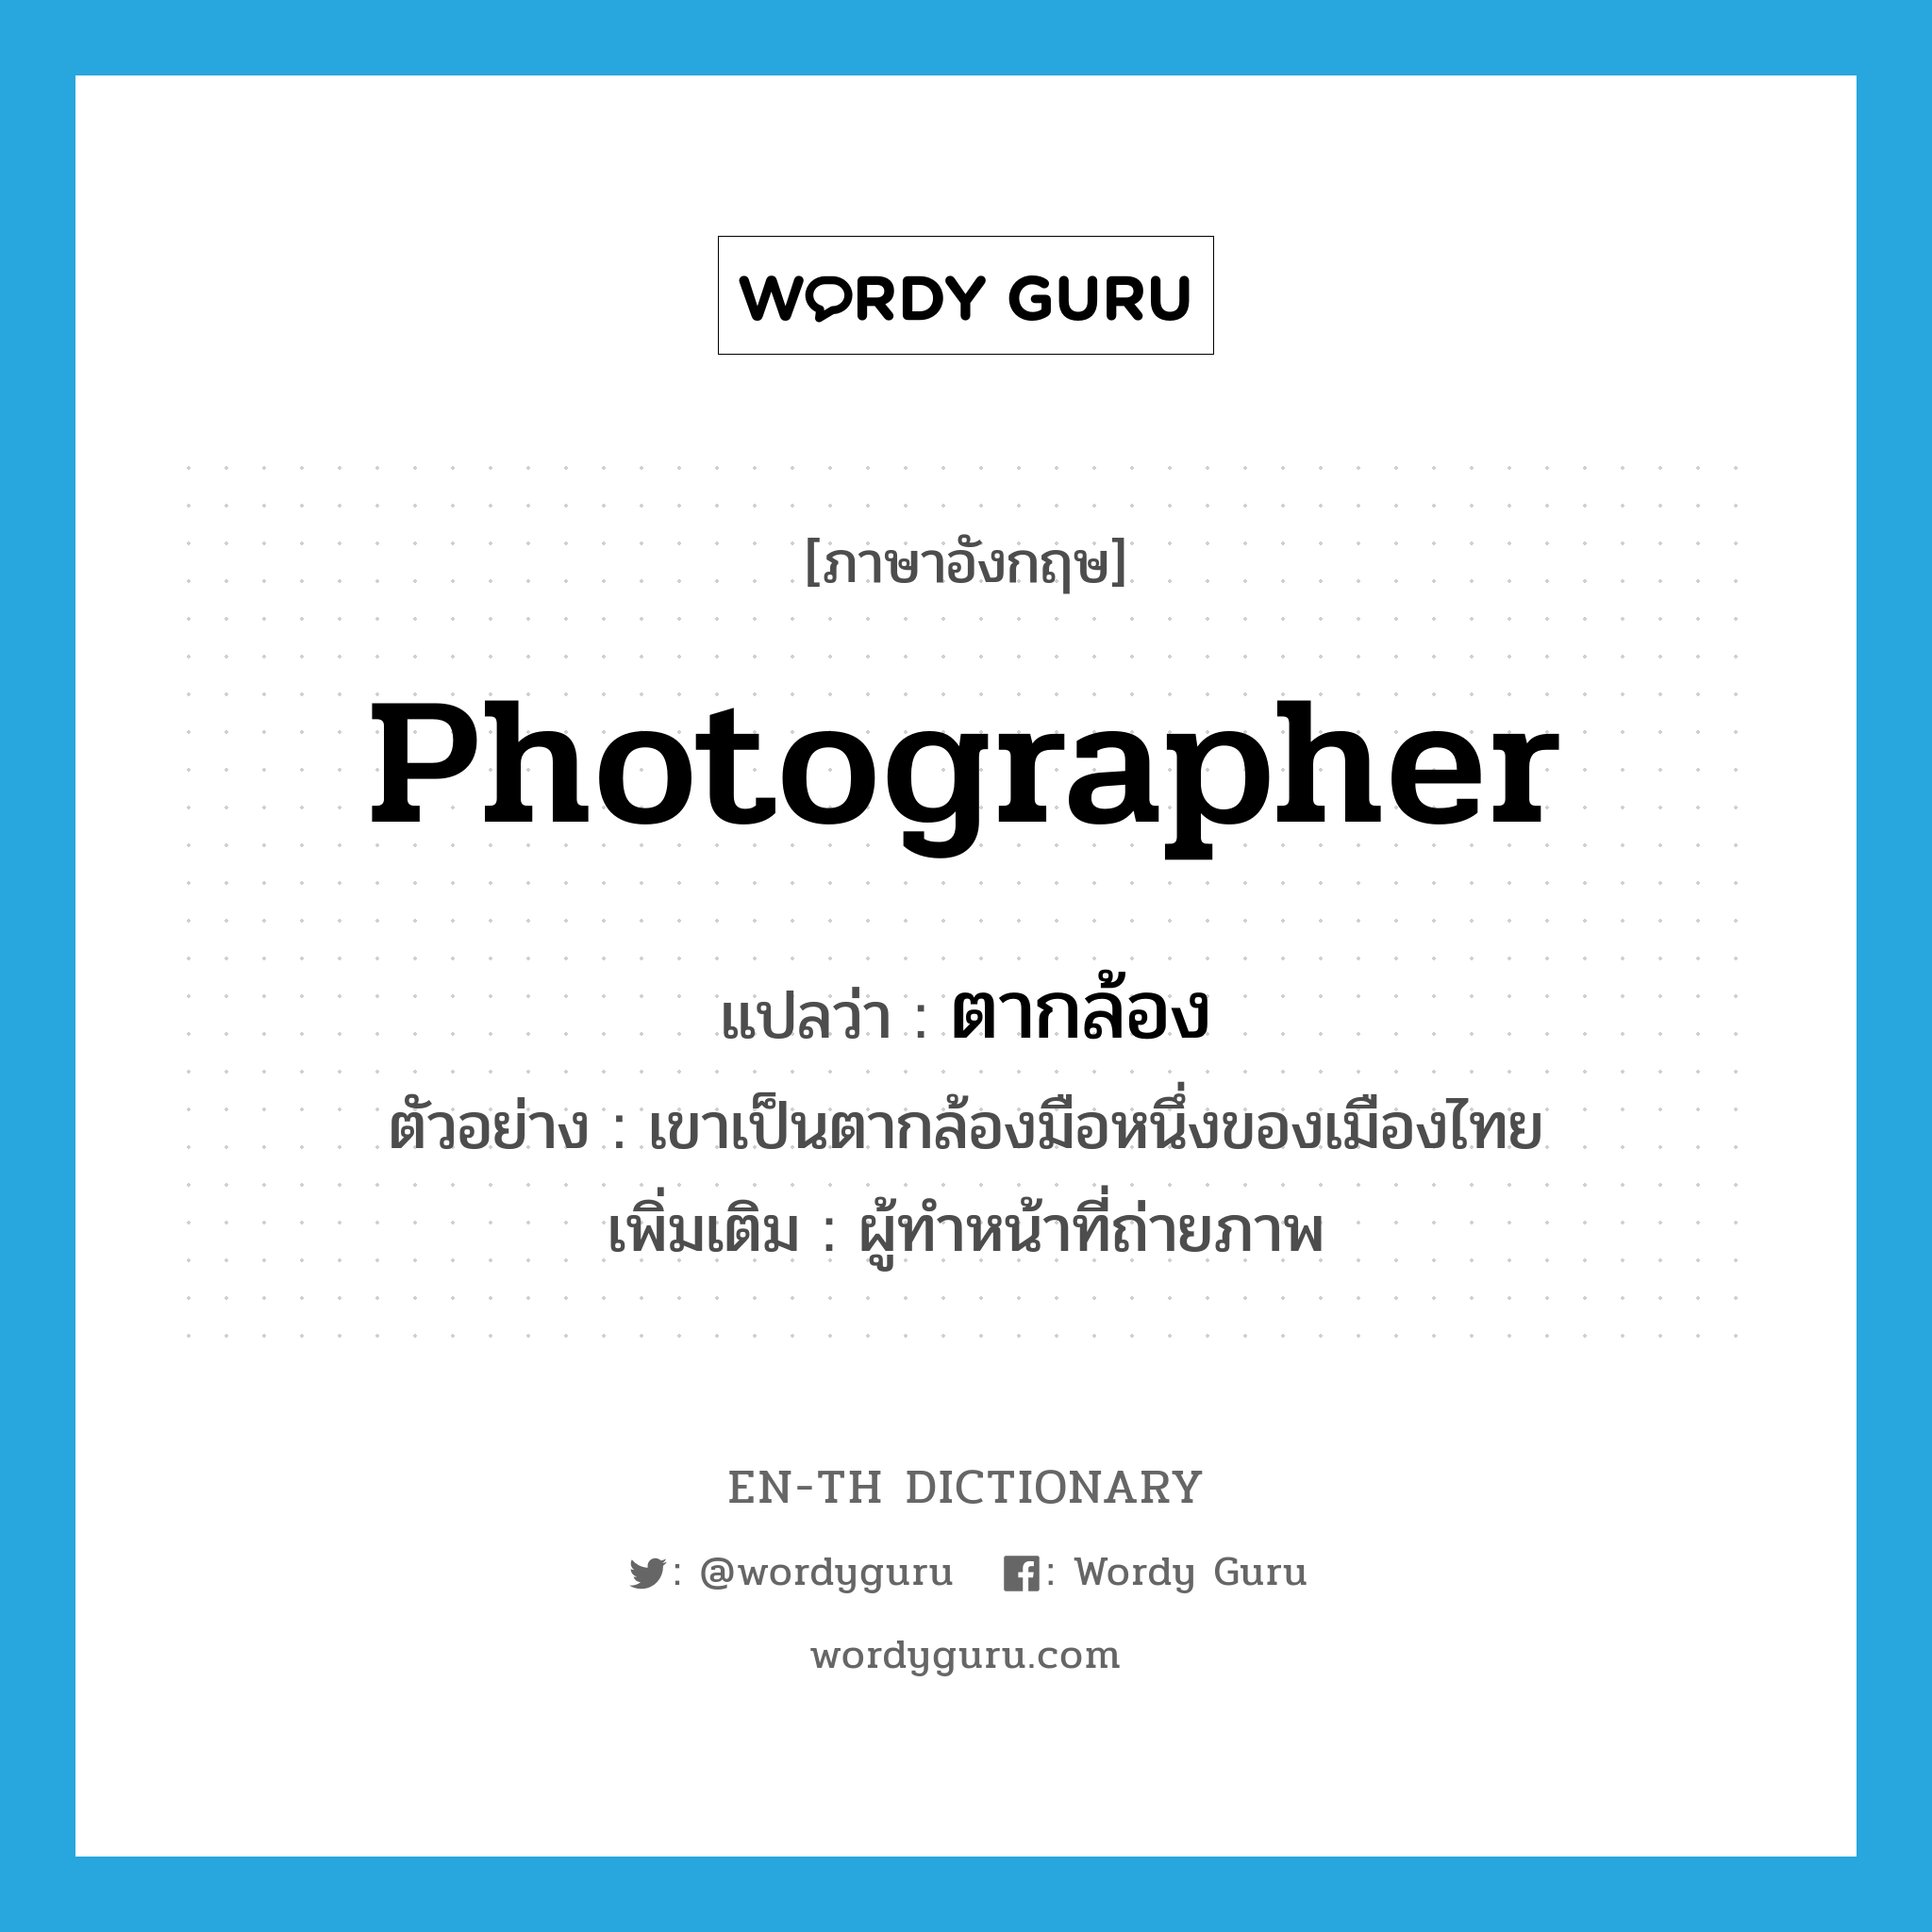 ตากล้อง ภาษาอังกฤษ?, คำศัพท์ภาษาอังกฤษ ตากล้อง แปลว่า photographer ประเภท N ตัวอย่าง เขาเป็นตากล้องมือหนึ่งของเมืองไทย เพิ่มเติม ผู้ทำหน้าที่ถ่ายภาพ หมวด N